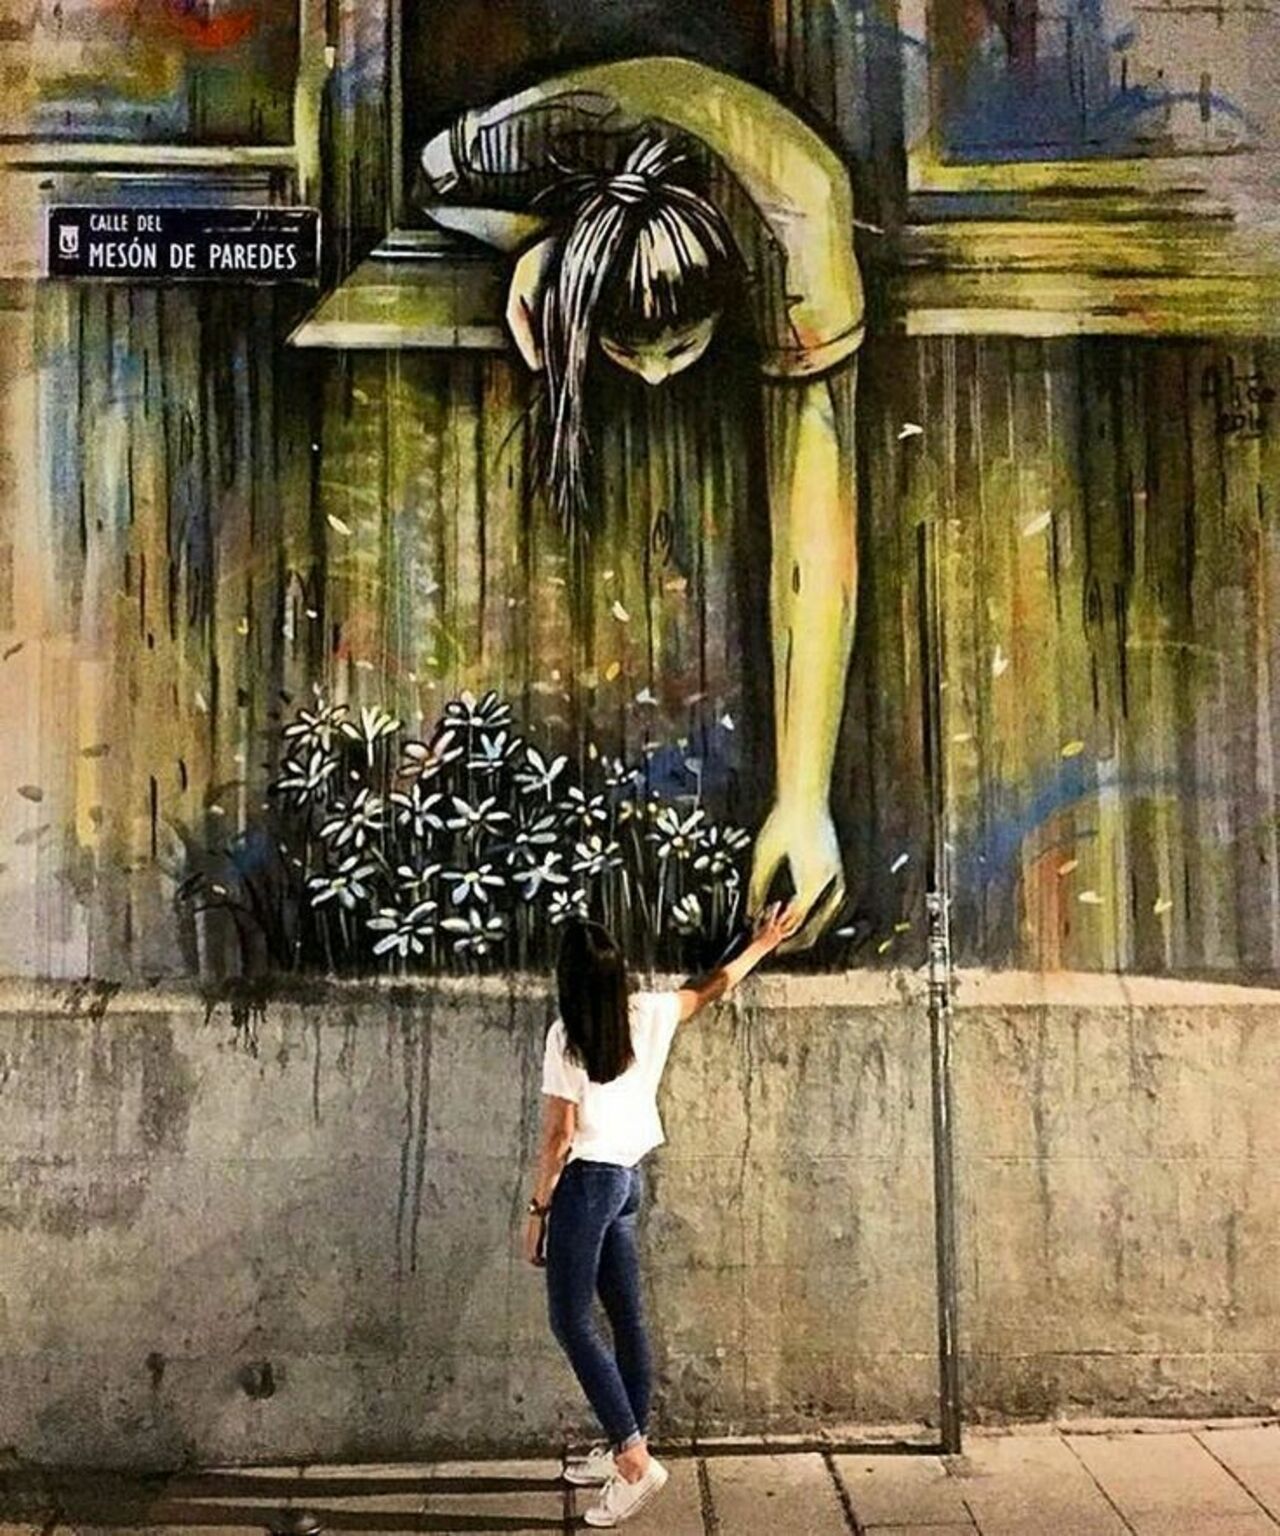 Mural by Alice Pasquini in Madrid, Spain #streetart #mural #graffiti #art https://t.co/Ekjhd8YPJH